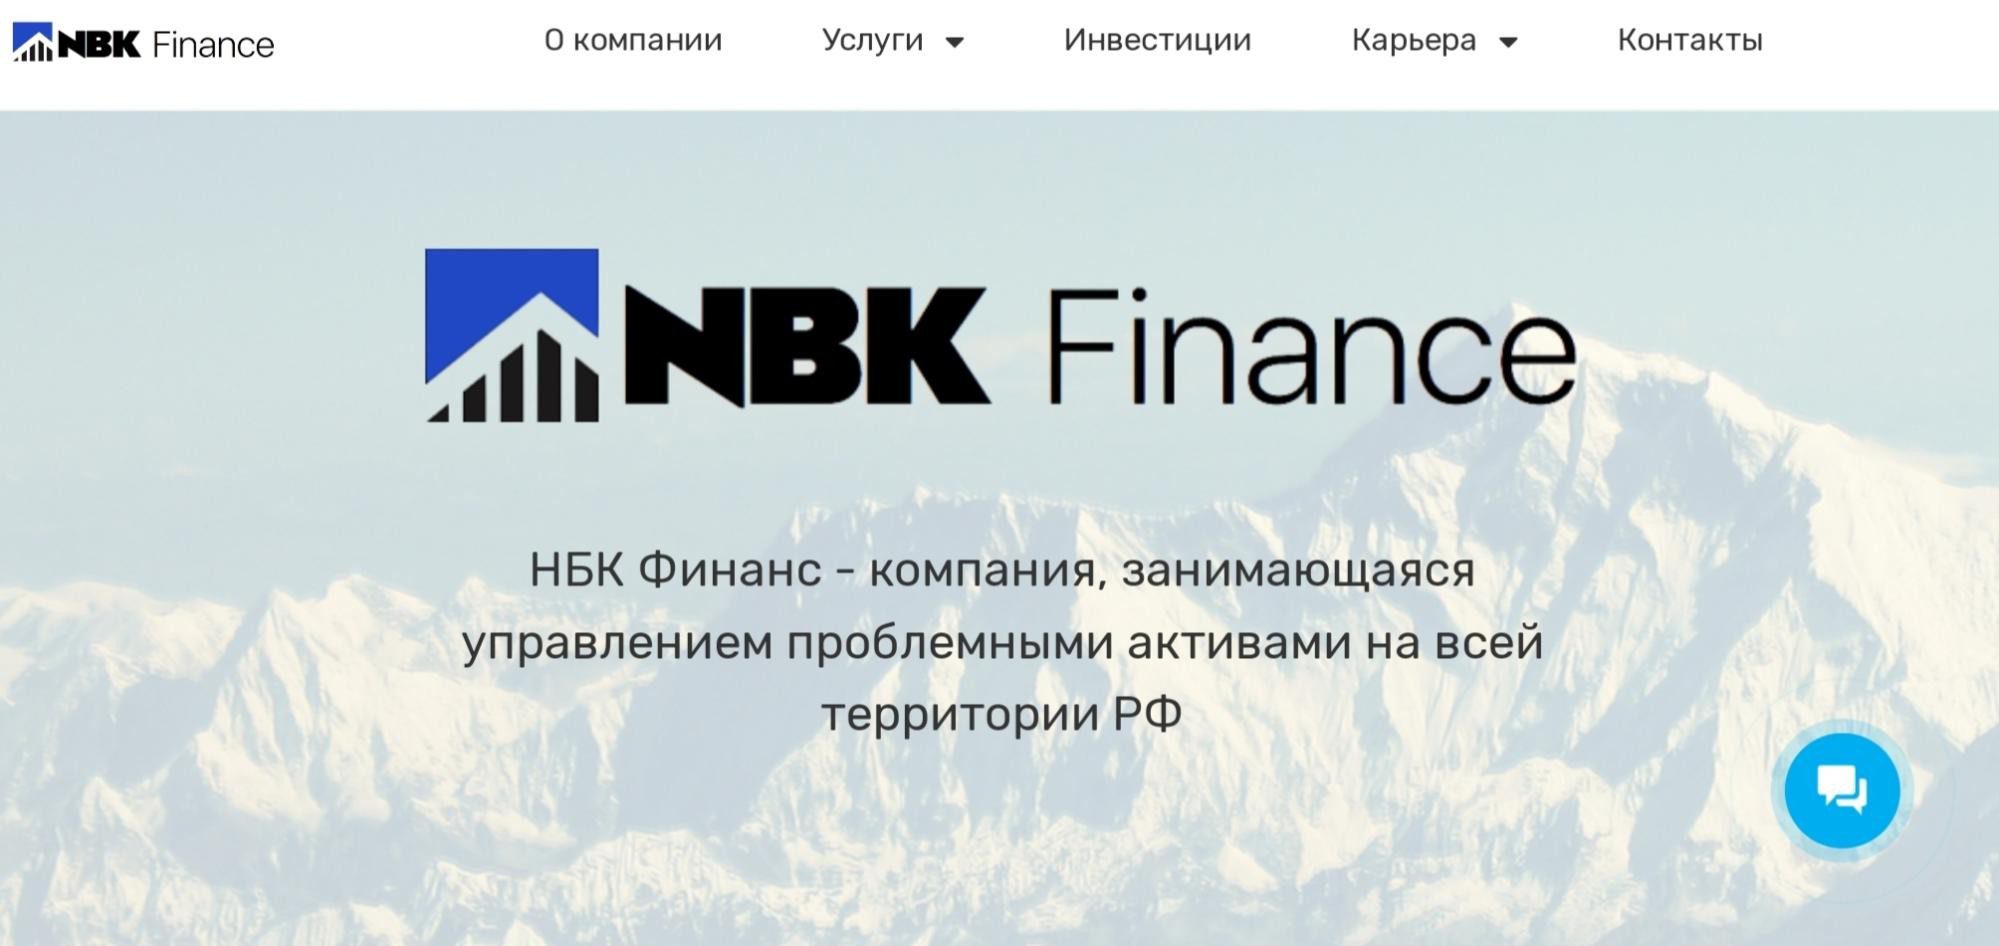 НБК Финанс обзор компании